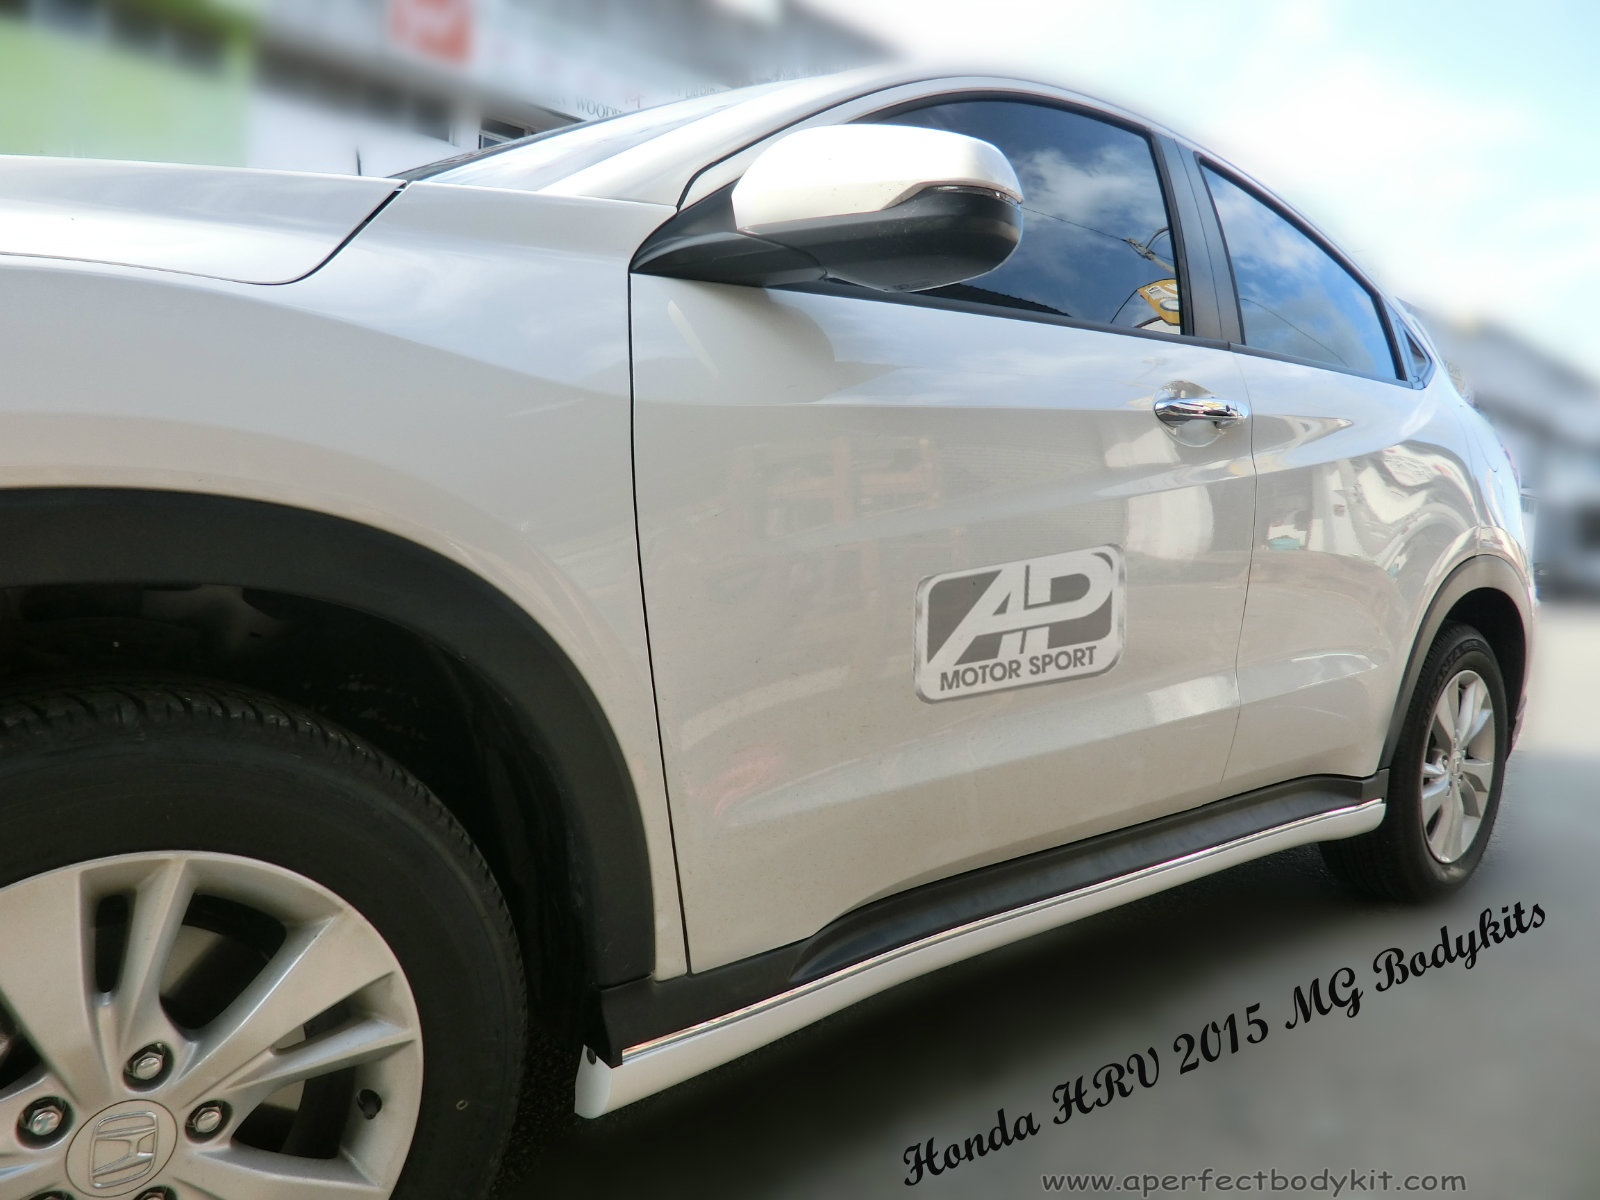 Honda HRV 2015 MG Style Bodykits 